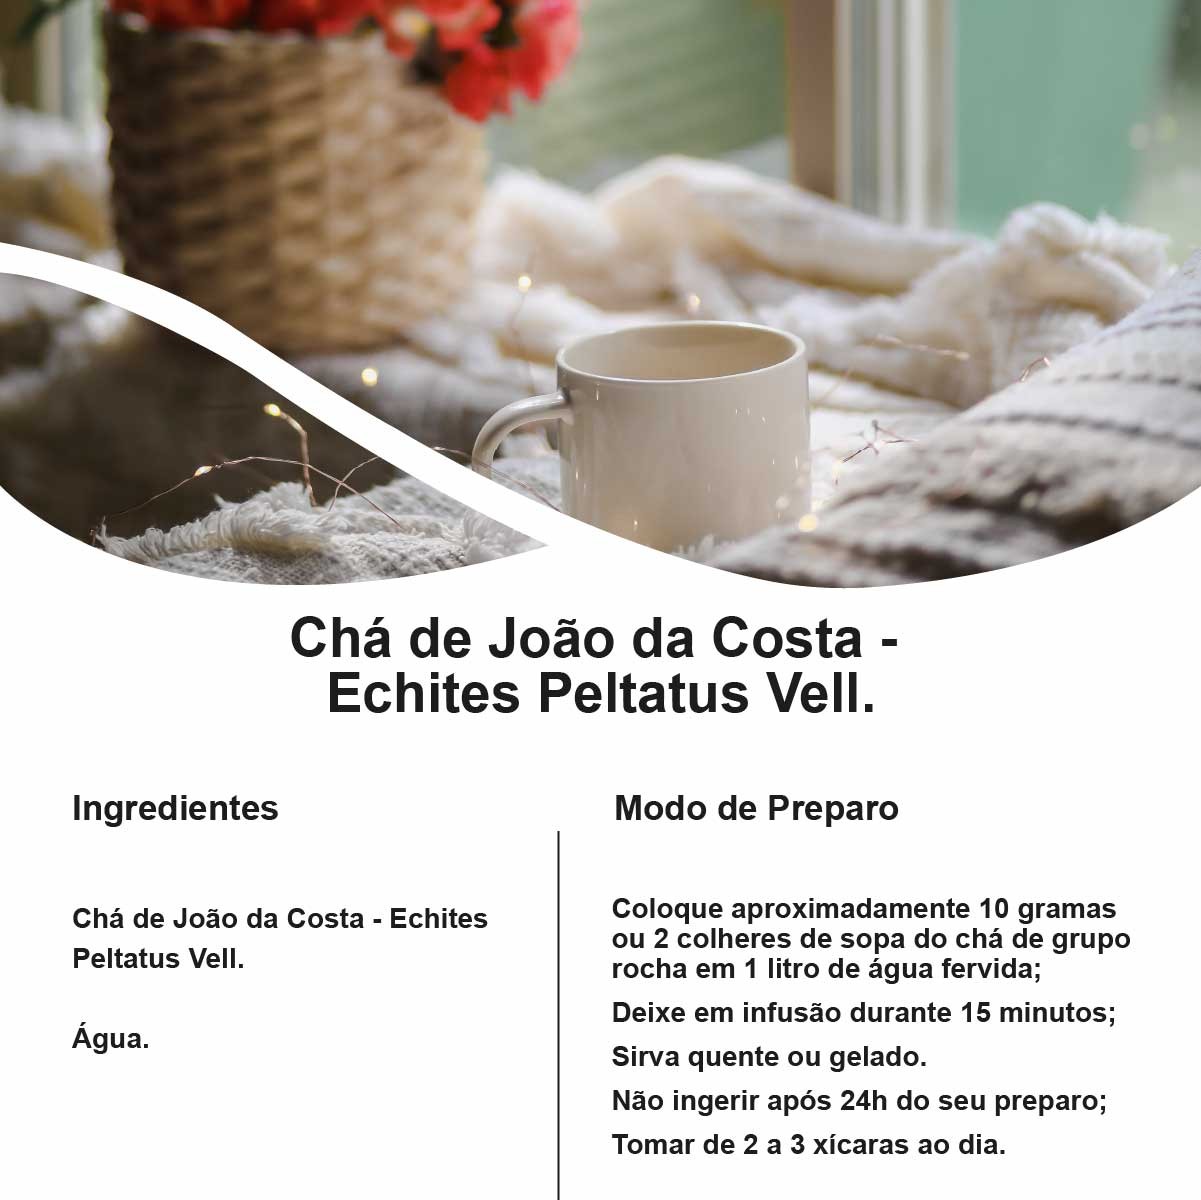 Chá de João da Costa - Echites Peltatus Vell. - 100g